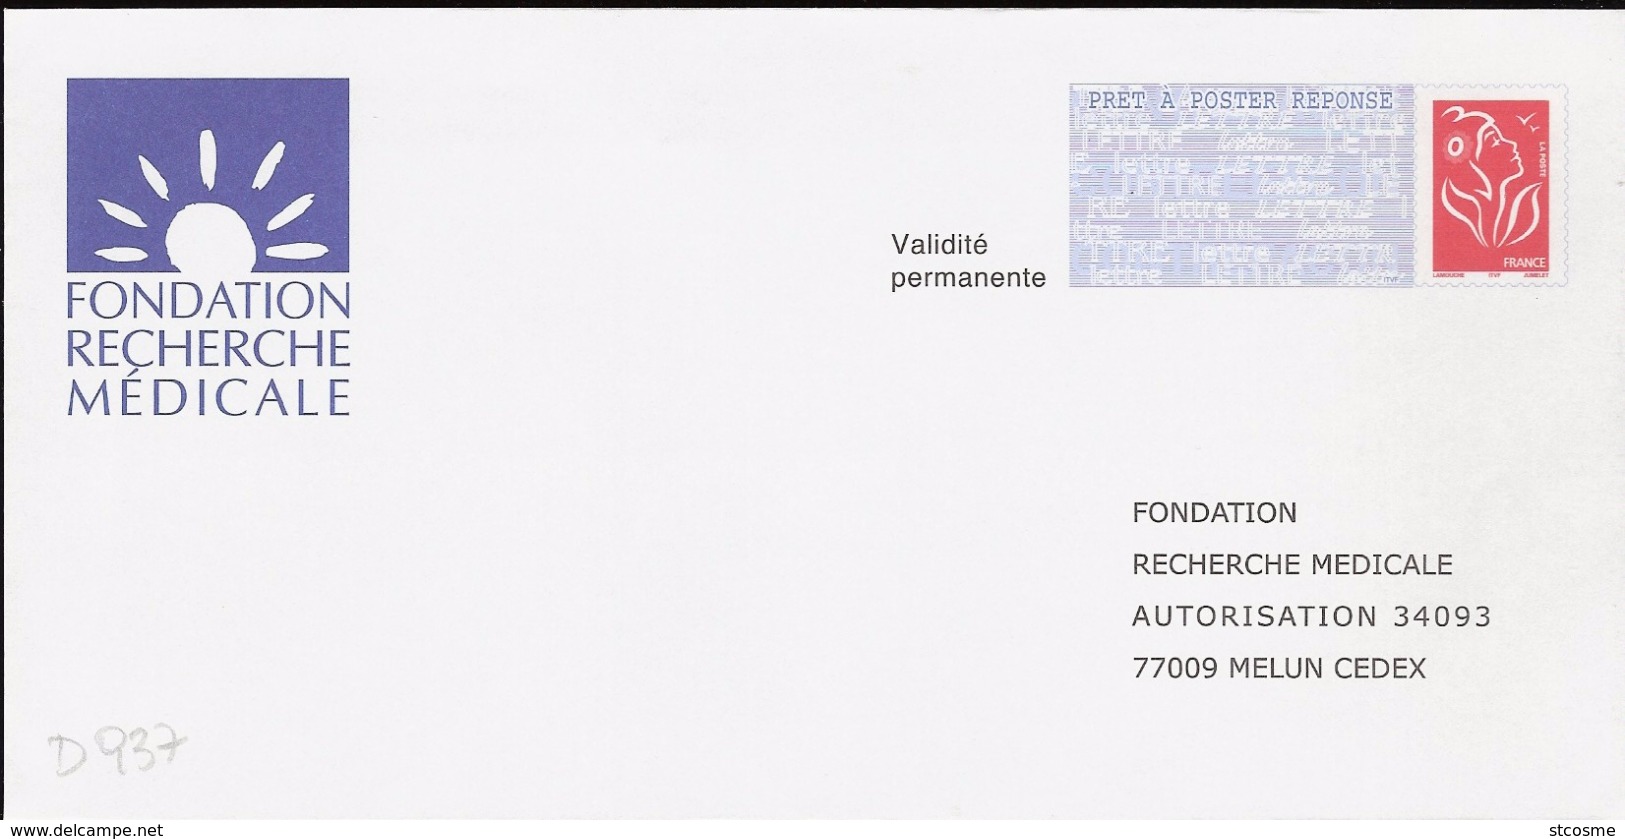 D0937 - Entier / Stationery / PSE - PAP Réponse Lamouche - Fondation Recherche Médicale - Prêts-à-poster:Answer/Lamouche